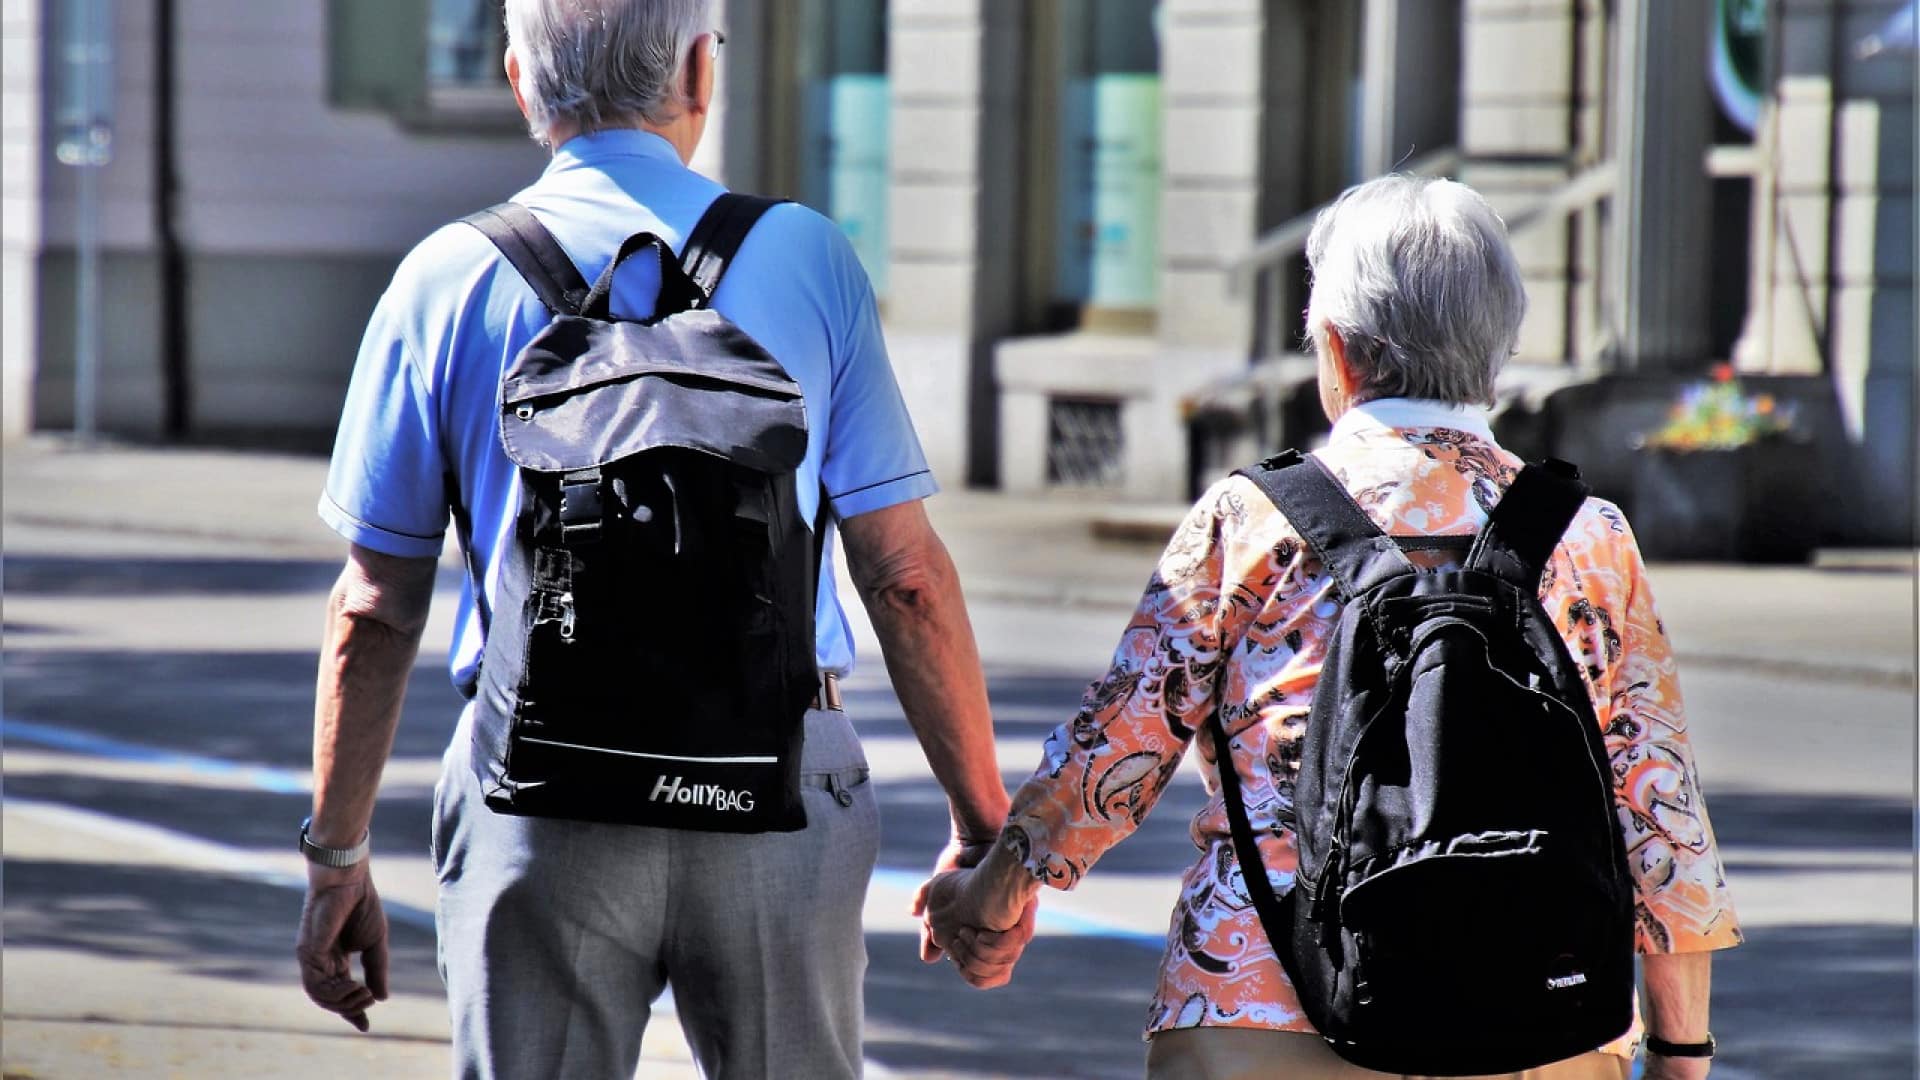 Perte de mobilité : quelles sont les solutions adaptées aux seniors ?